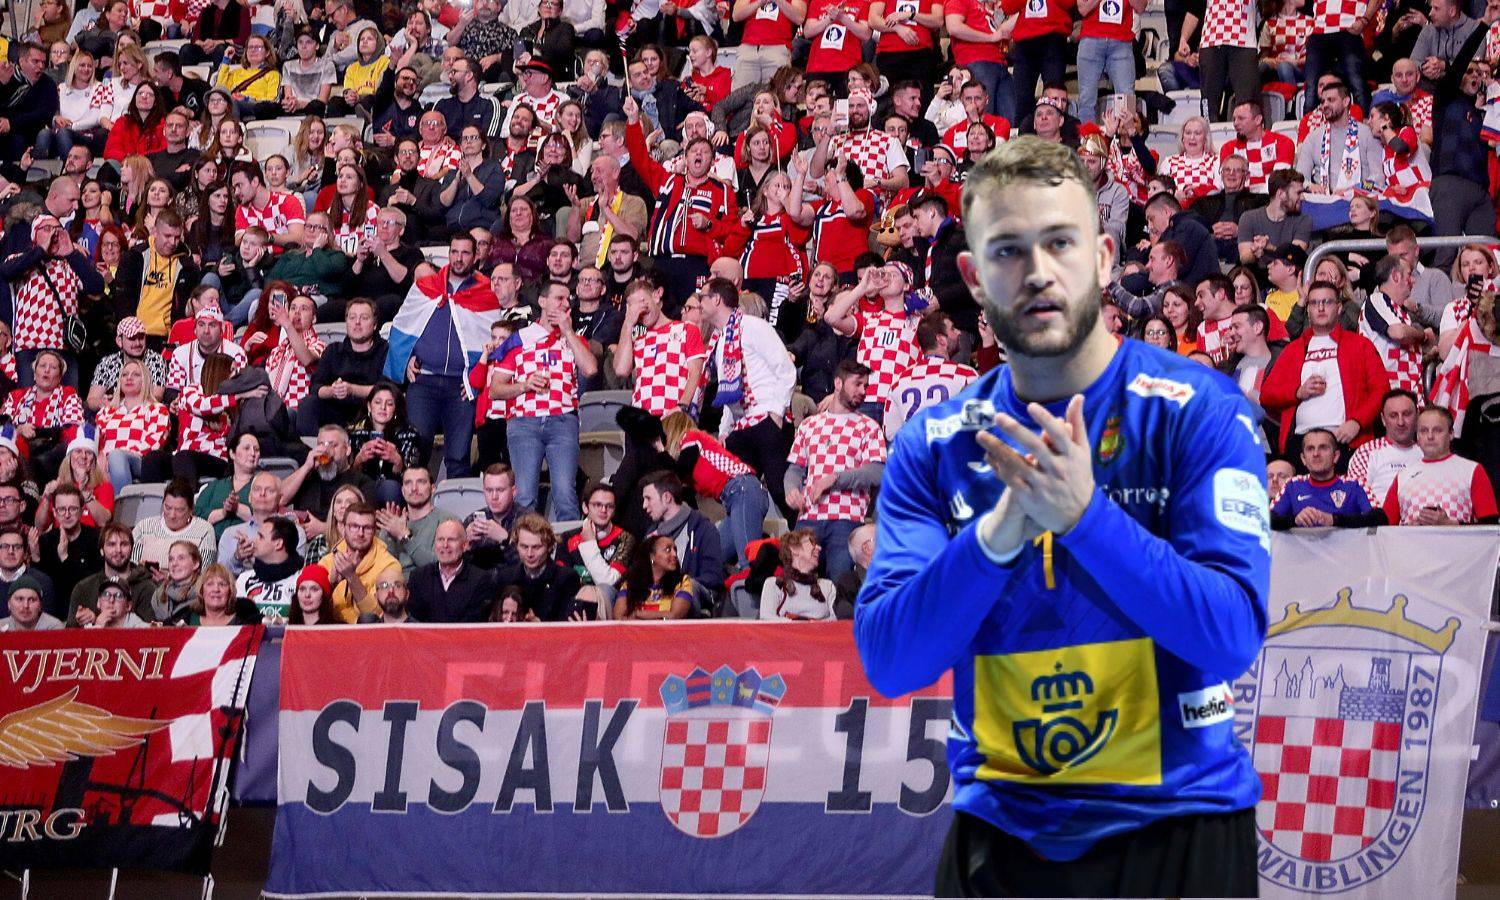 'Hrvati, vi ste favoriti u finalu. I u Stockholmu ste kod kuće'